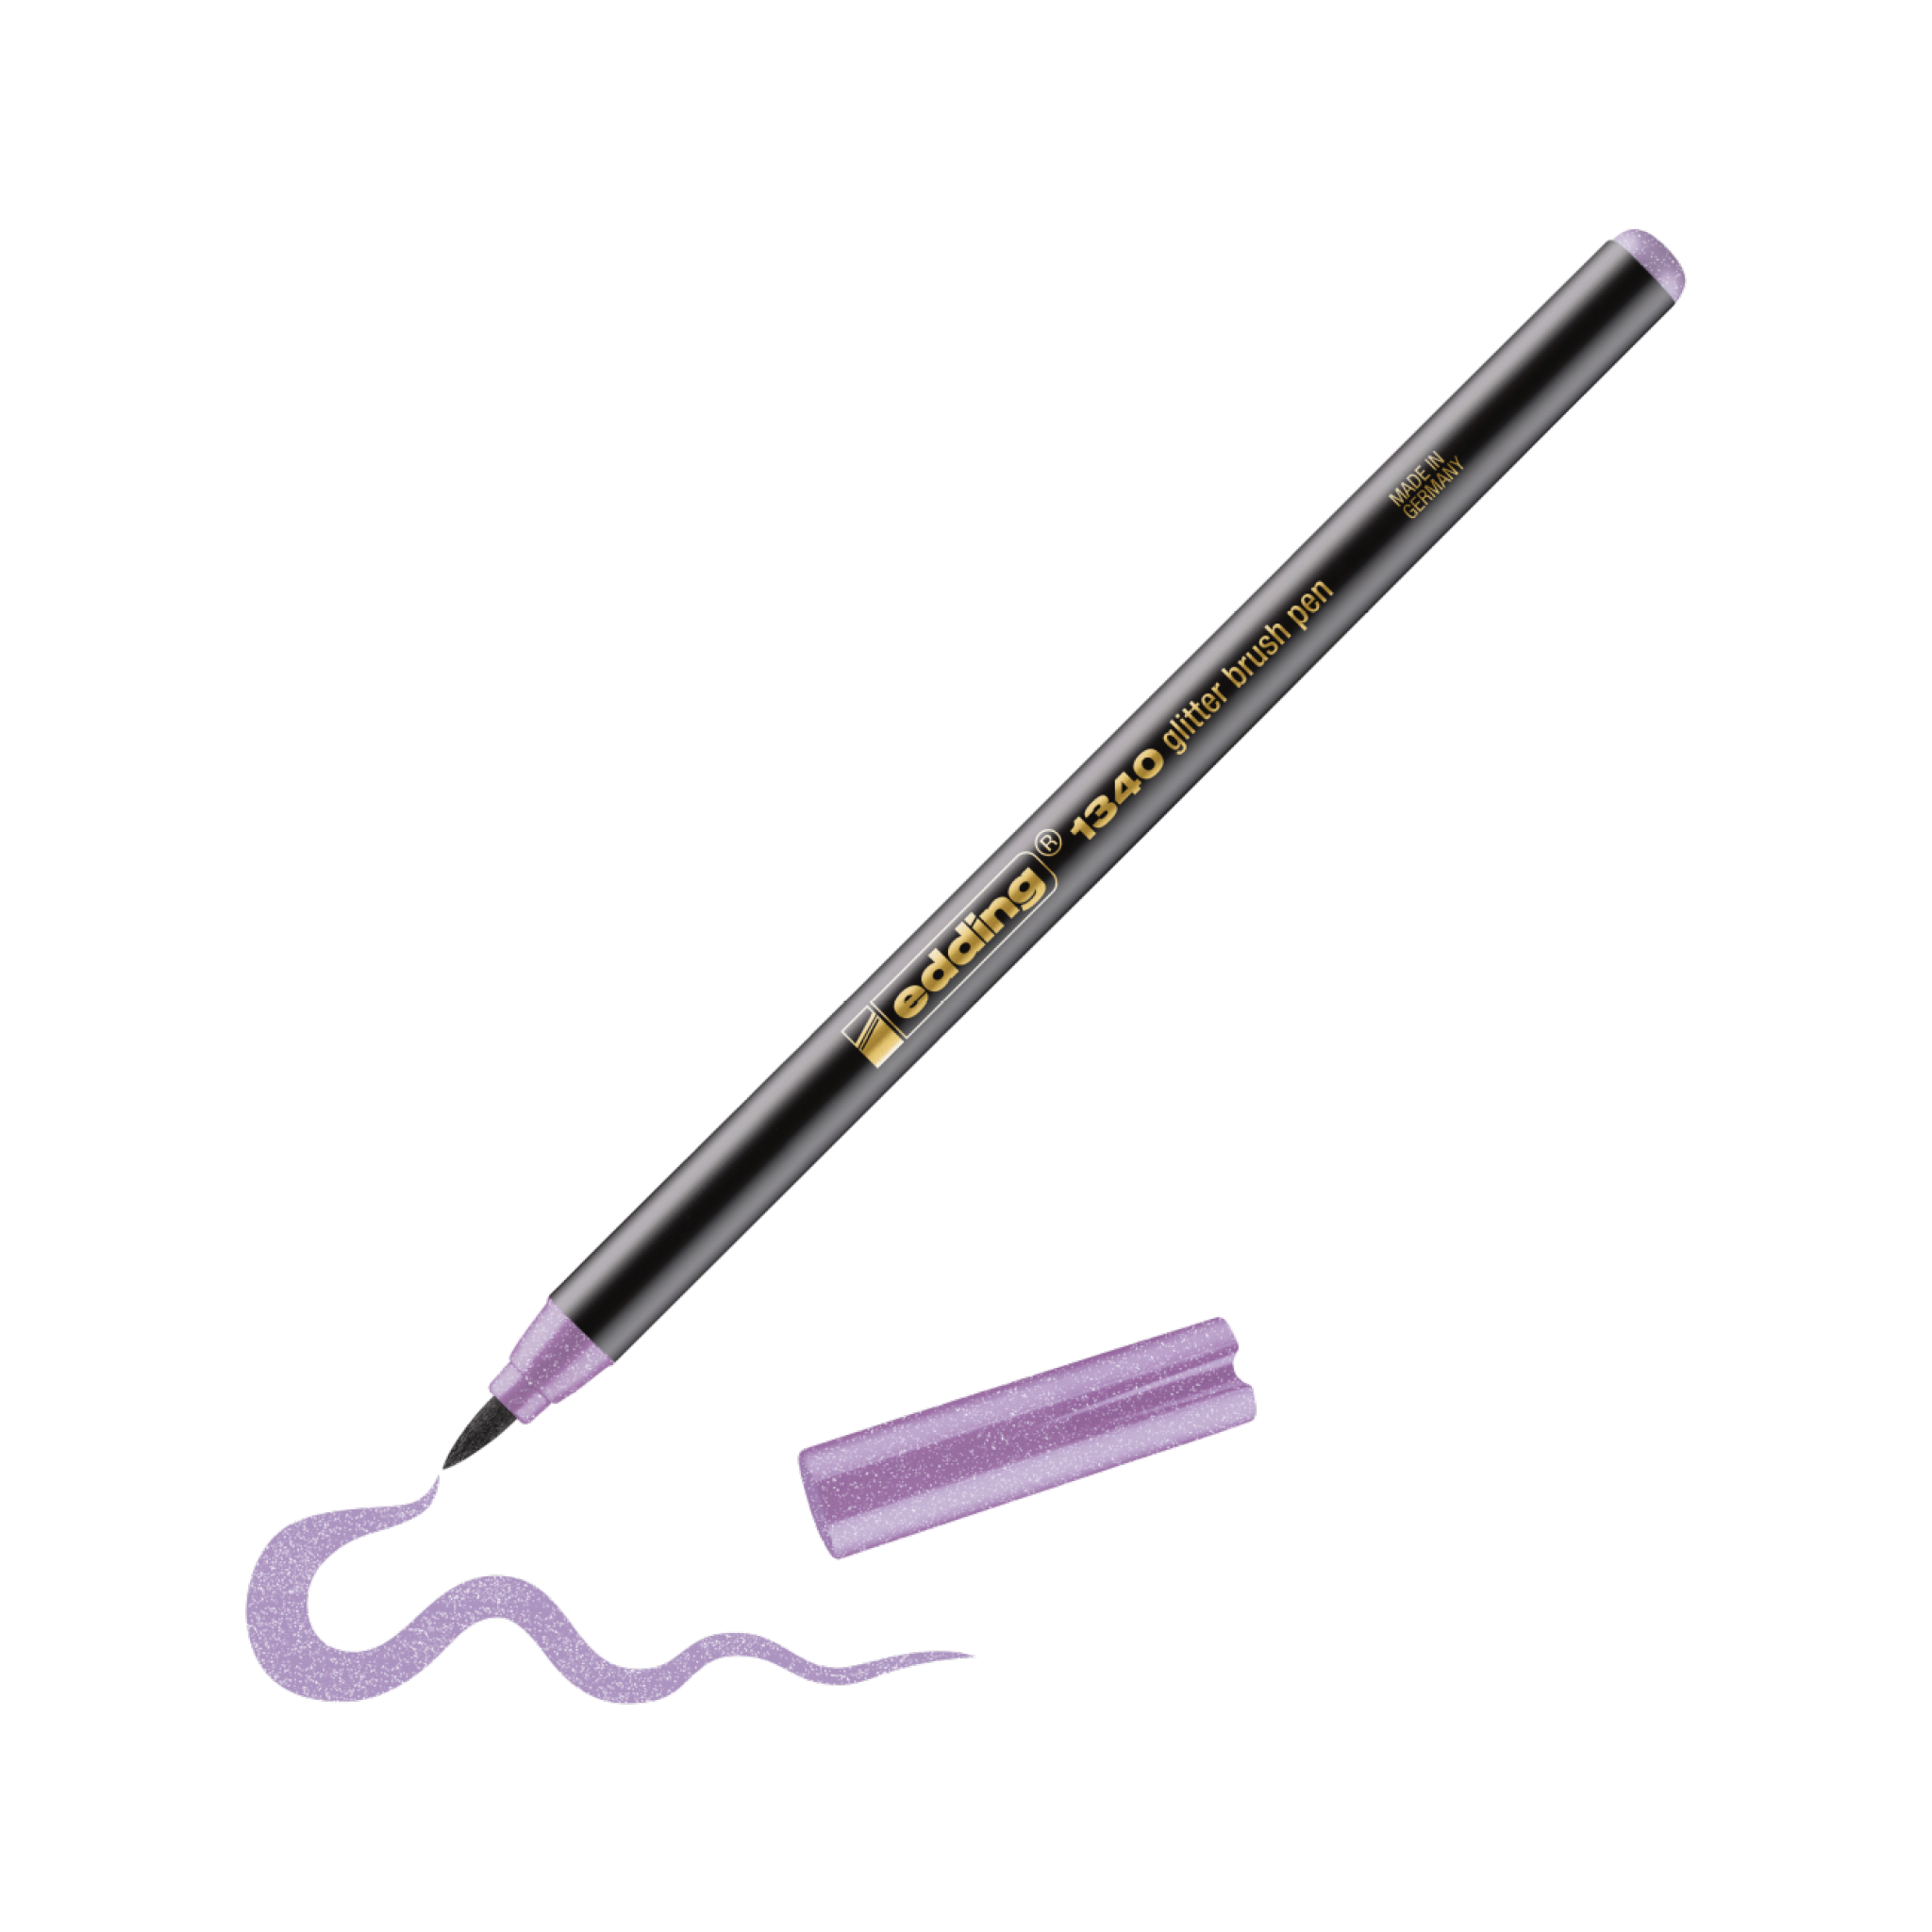 Eine realistische Abbildung eines lavendelfarbenen edding 1340 Glitzer-Pinselstifts, der eine geschweifte Linie auf einen weißen Hintergrund zeichnet, daneben platziert ist die Glitzerstift-Kappe.